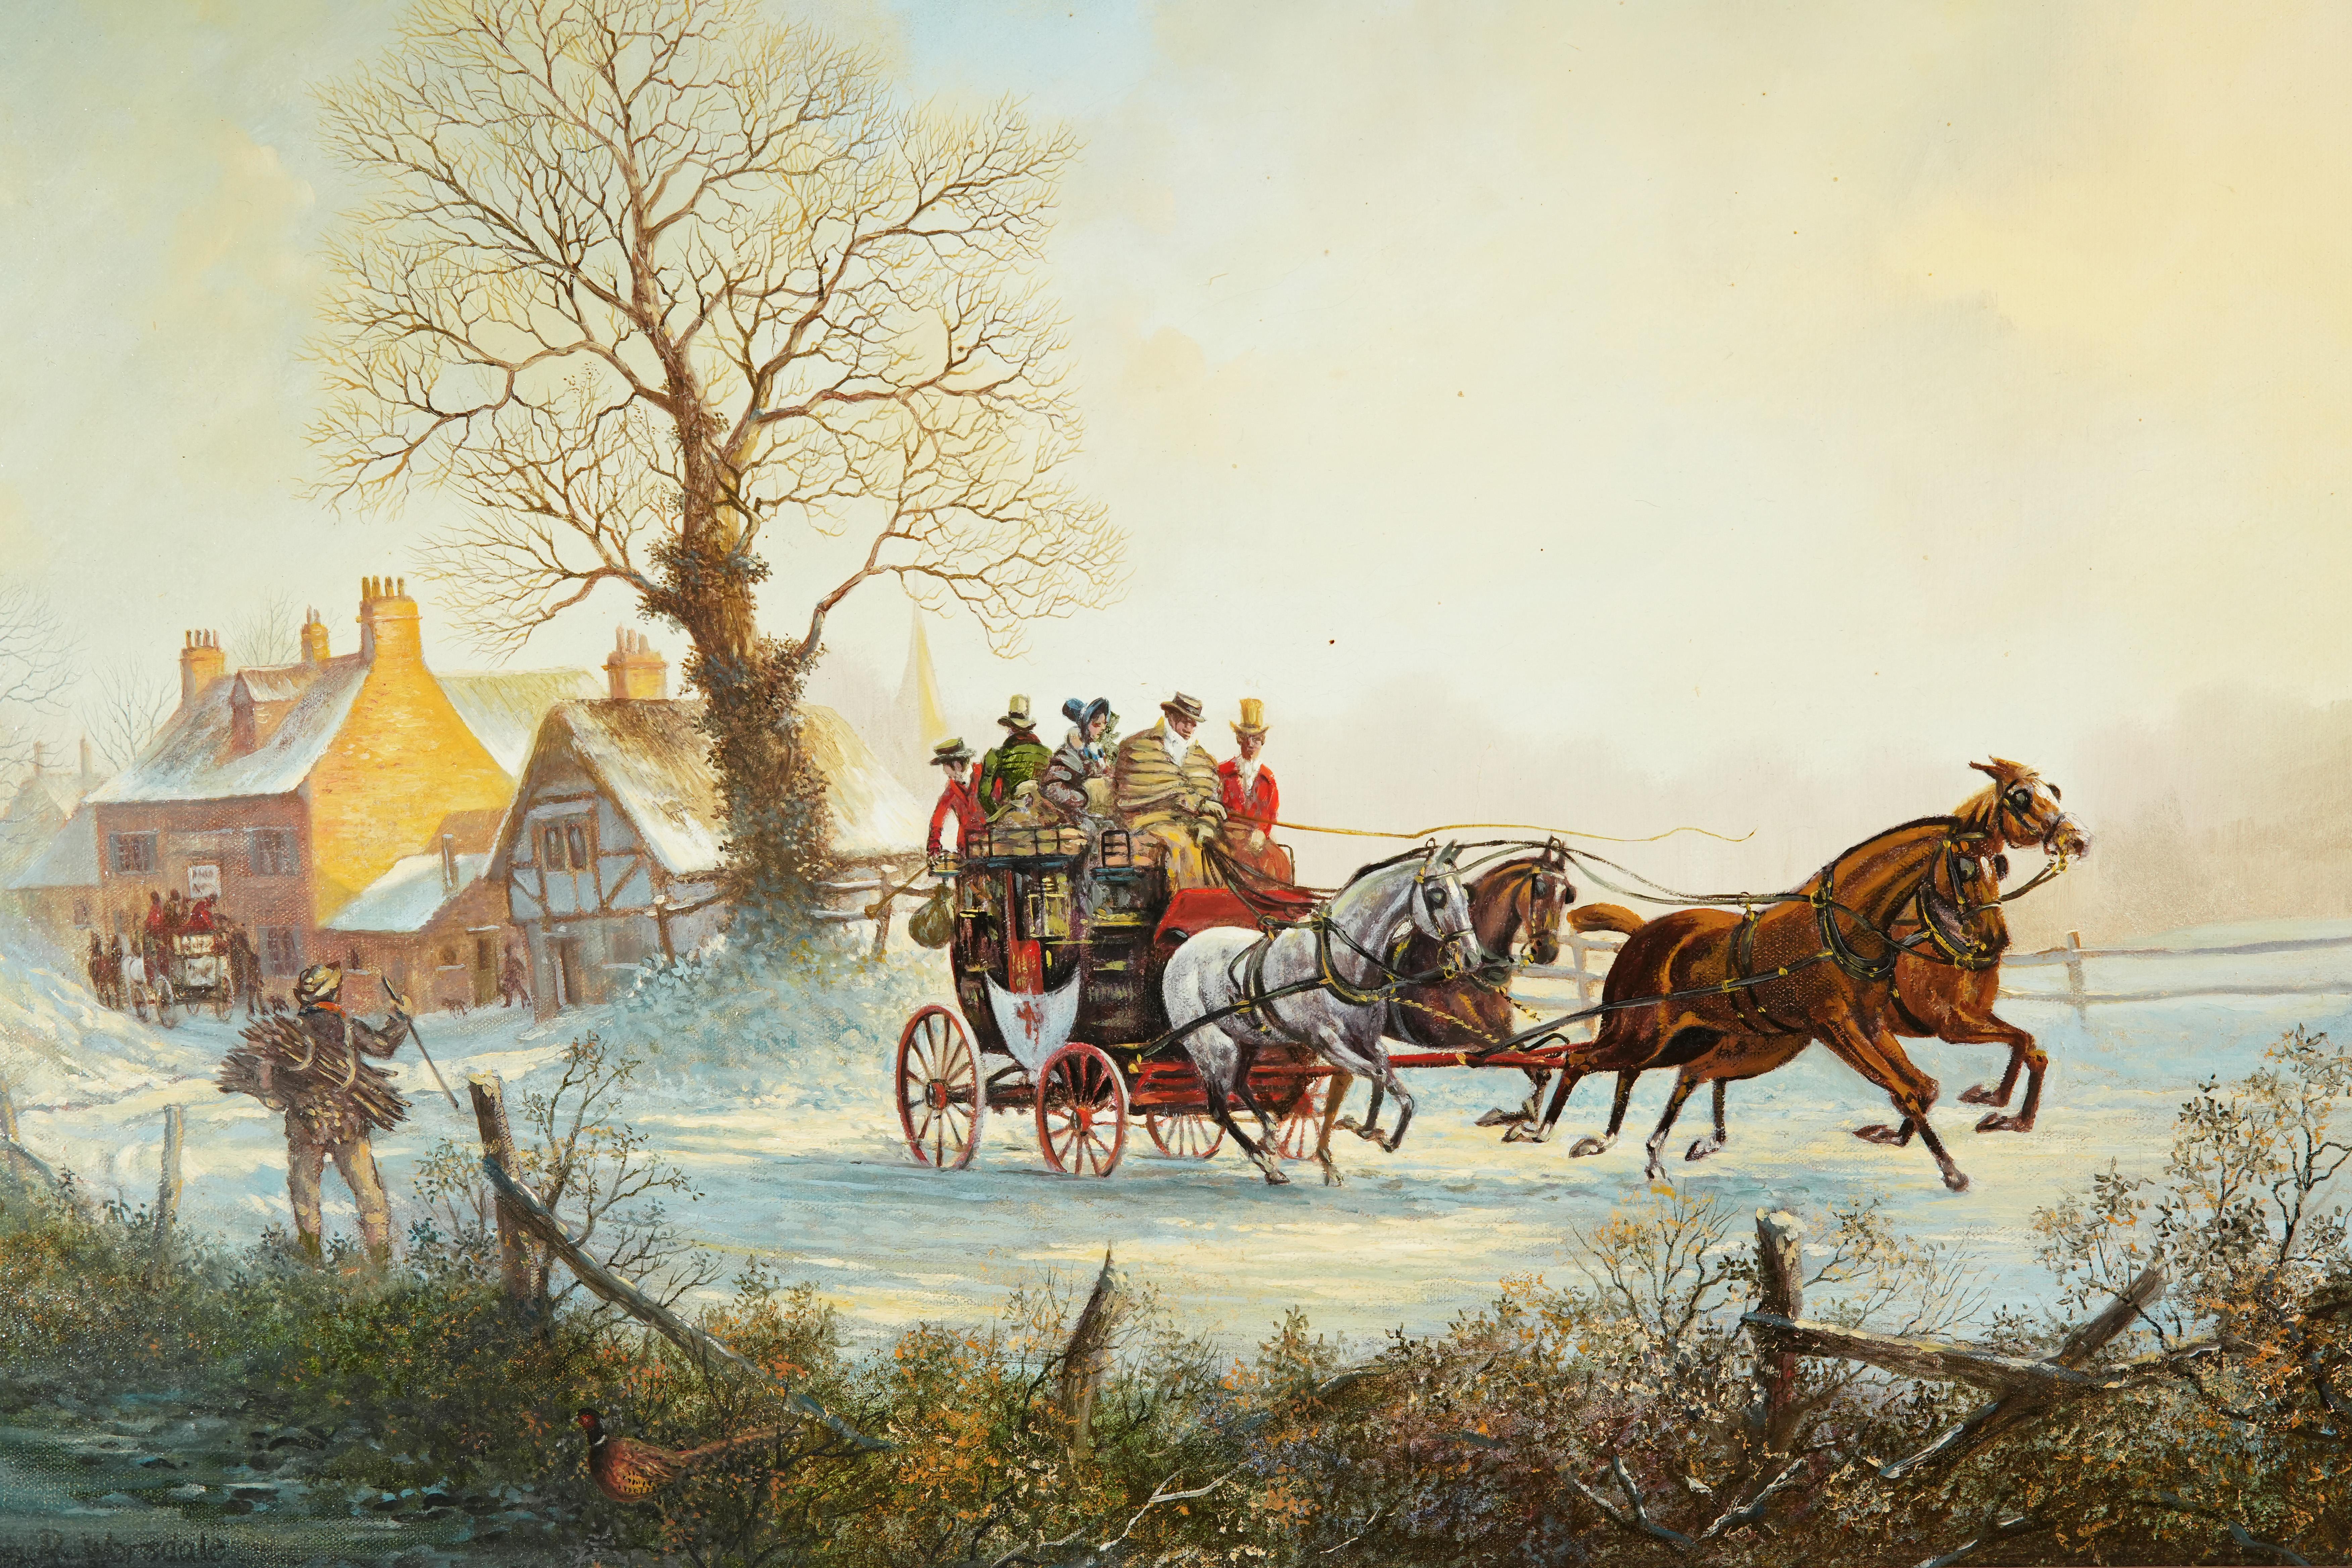 Ein schönes antikes Ölgemälde von John-Richard Worsdale (1869-1947), das Pferde zeigt, die eine Postkutsche im Schnee ziehen
Der Künstler schildert diese eindrucksvolle Szene mit einer weitläufigen Ansicht, in der die von 4 Pferden gezogene